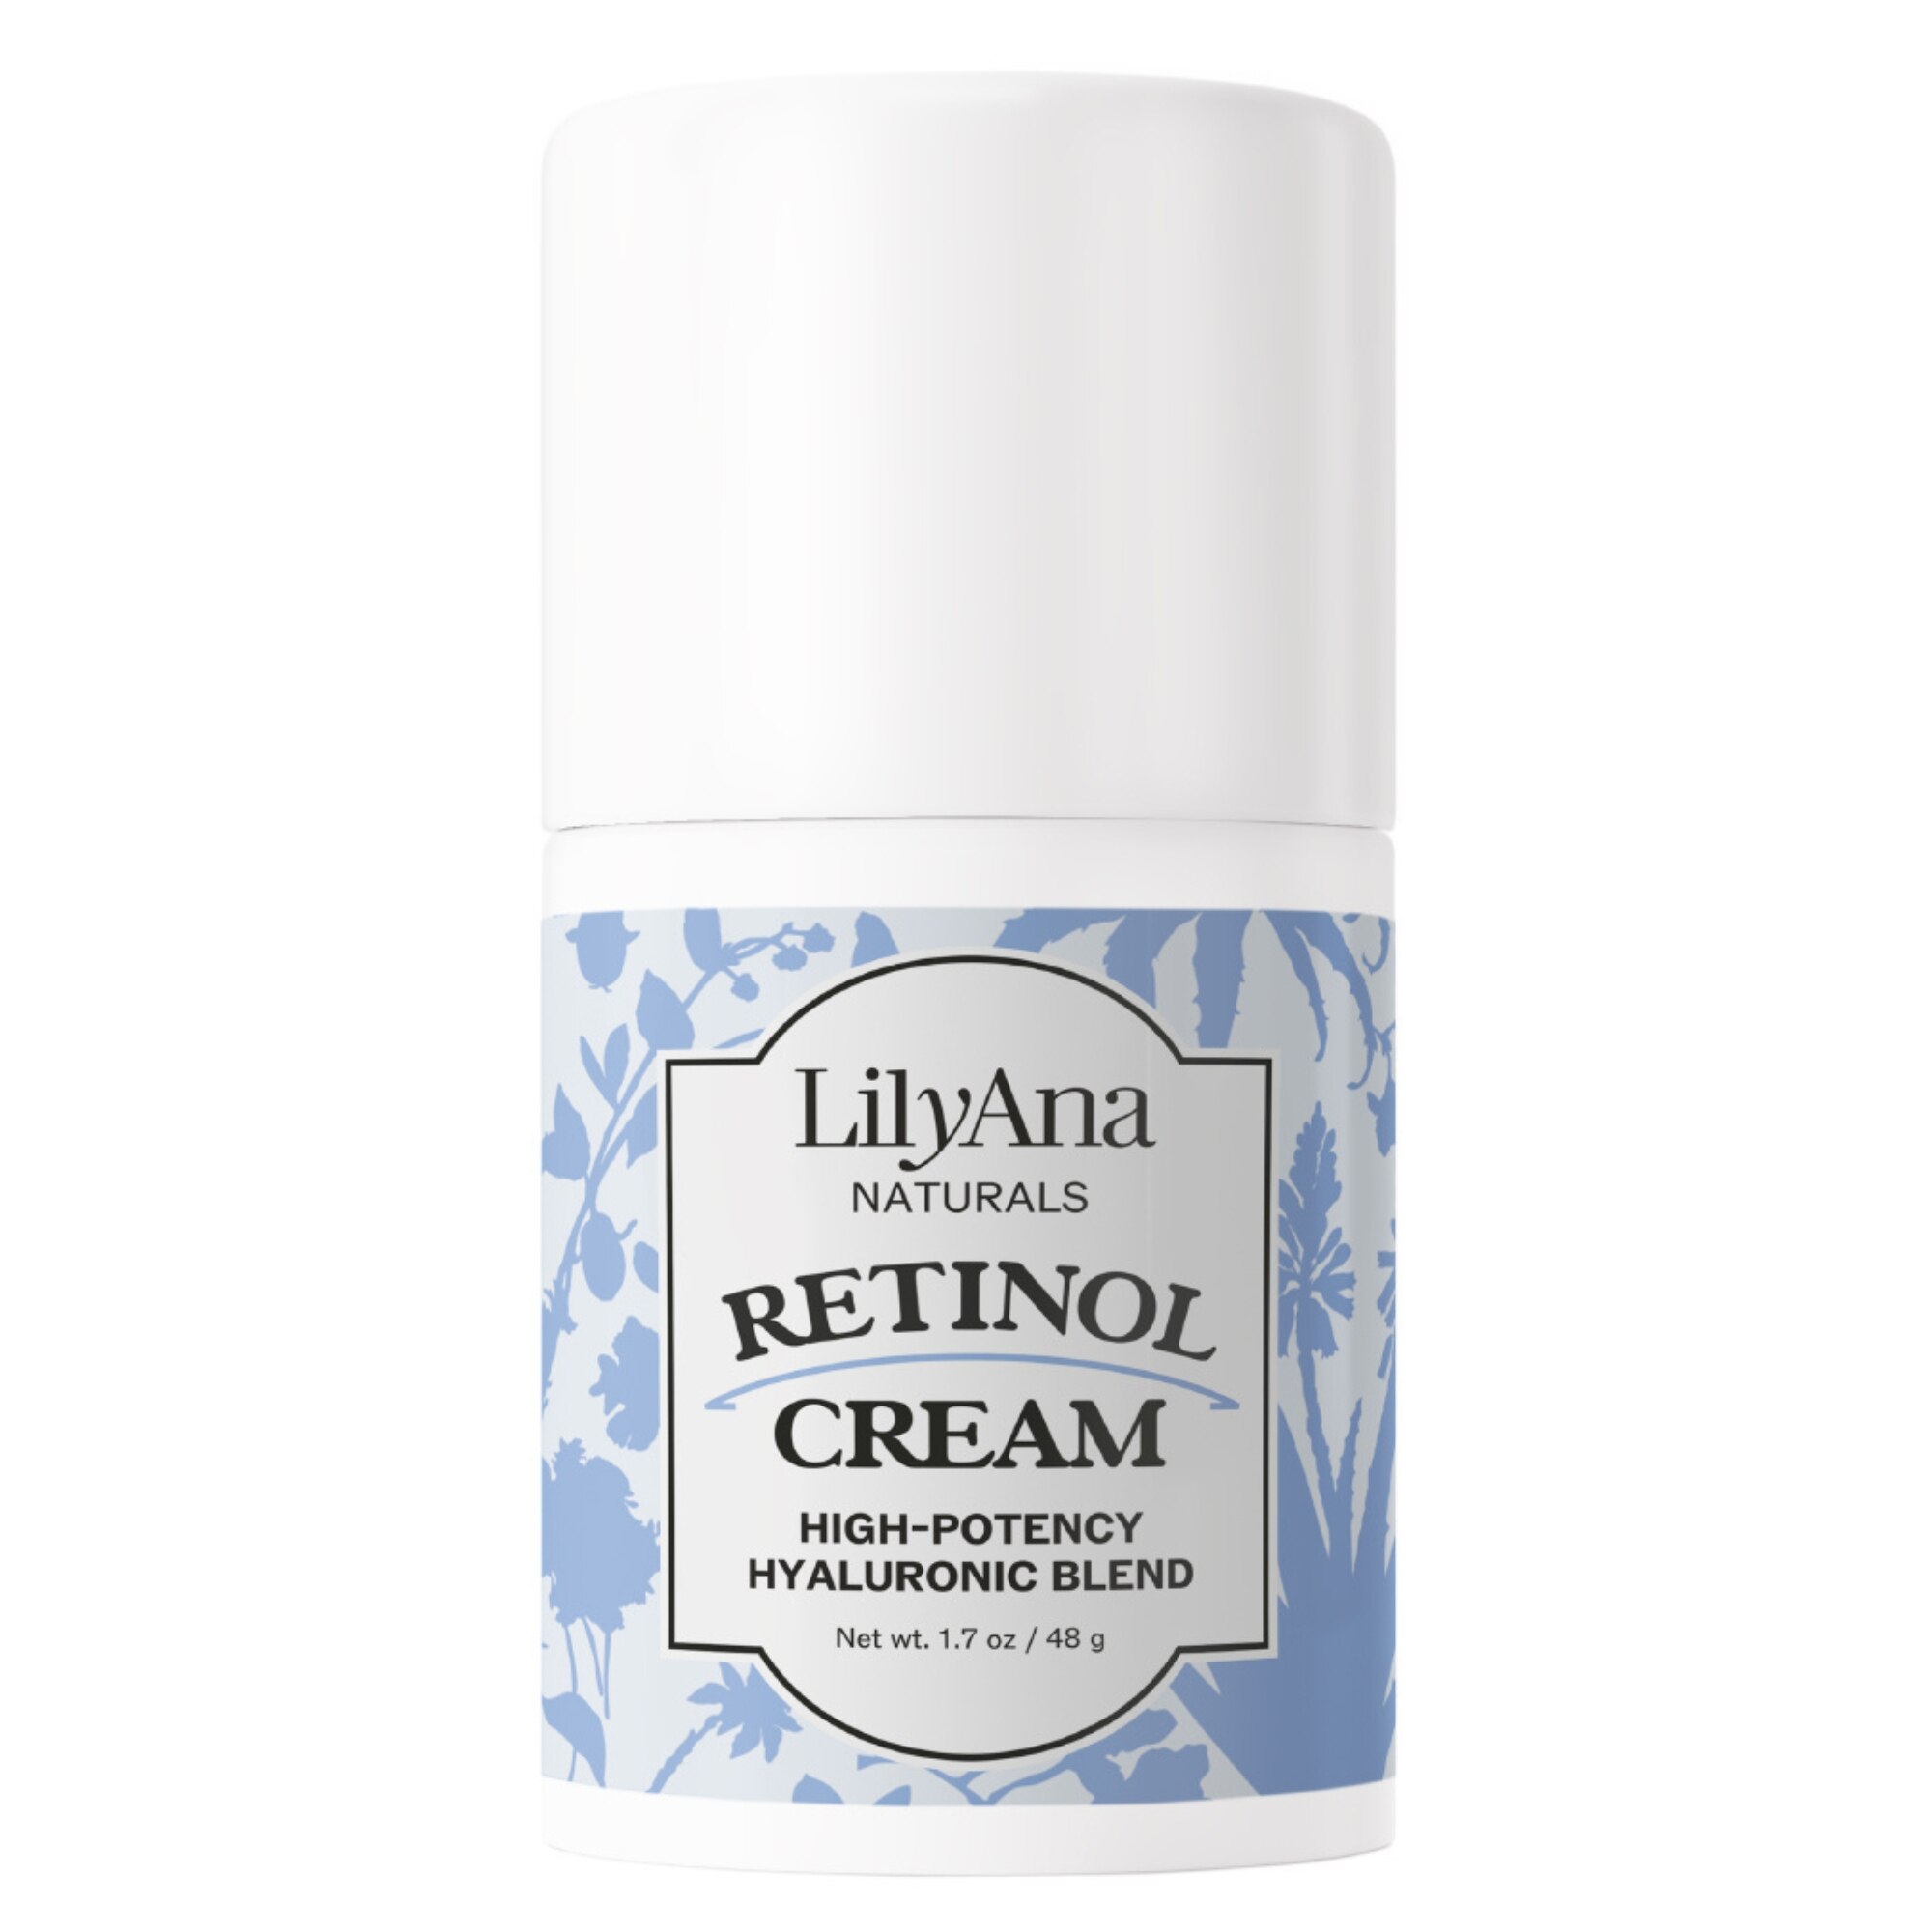 LilyAna Naturals Retinol Cream, 1.7 OZ